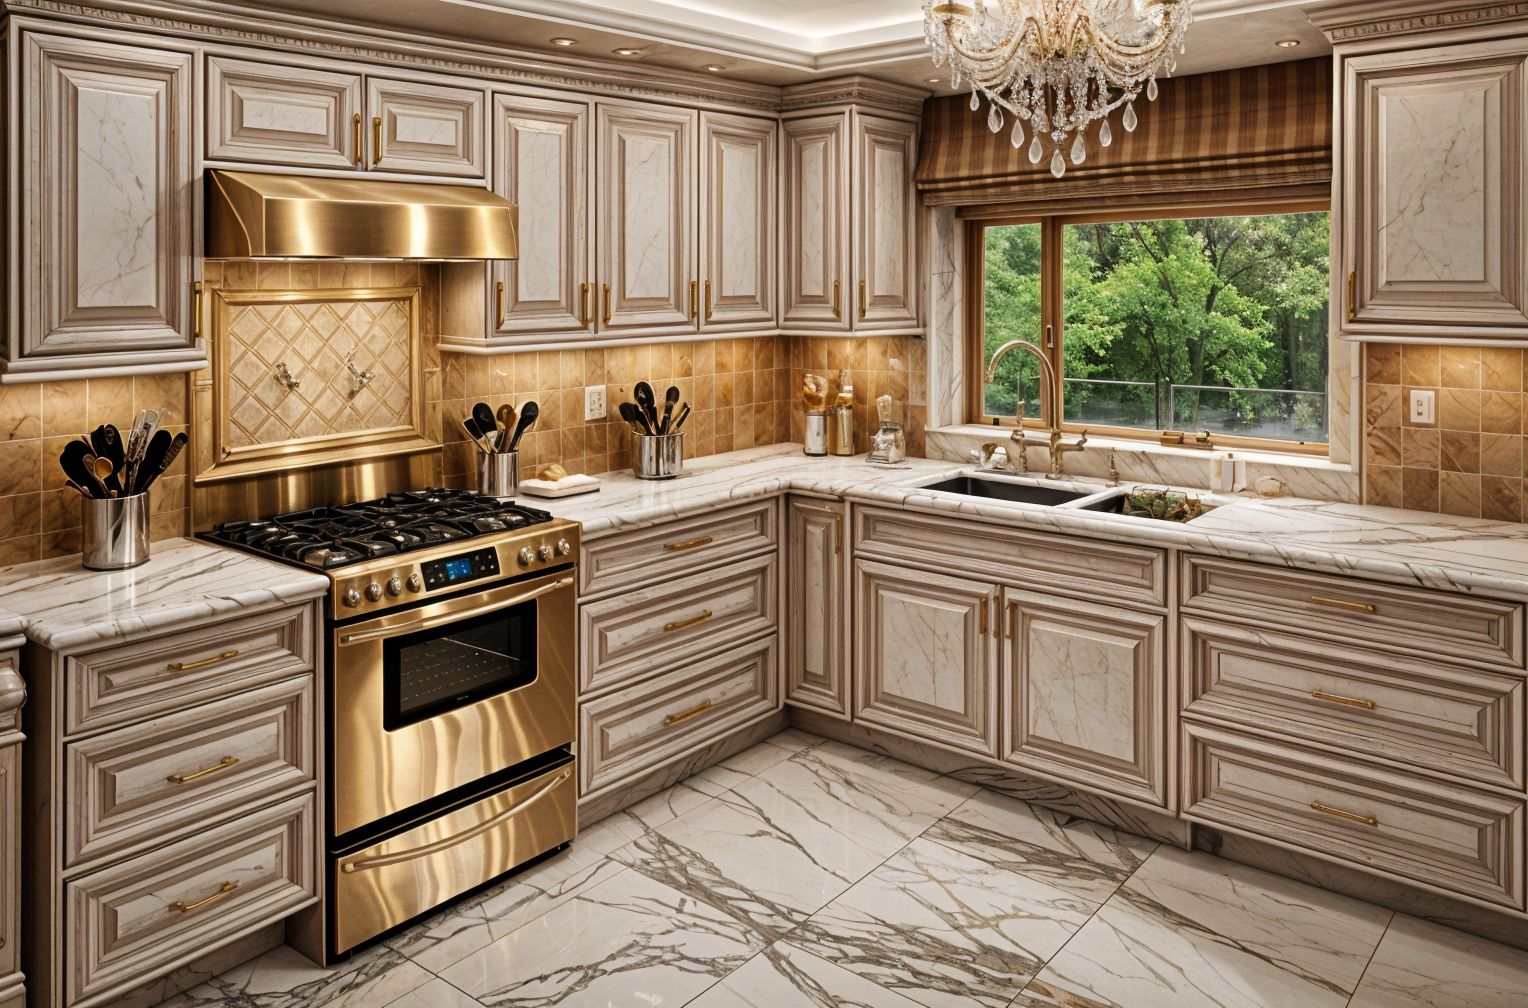 Luxurious style Kitchen